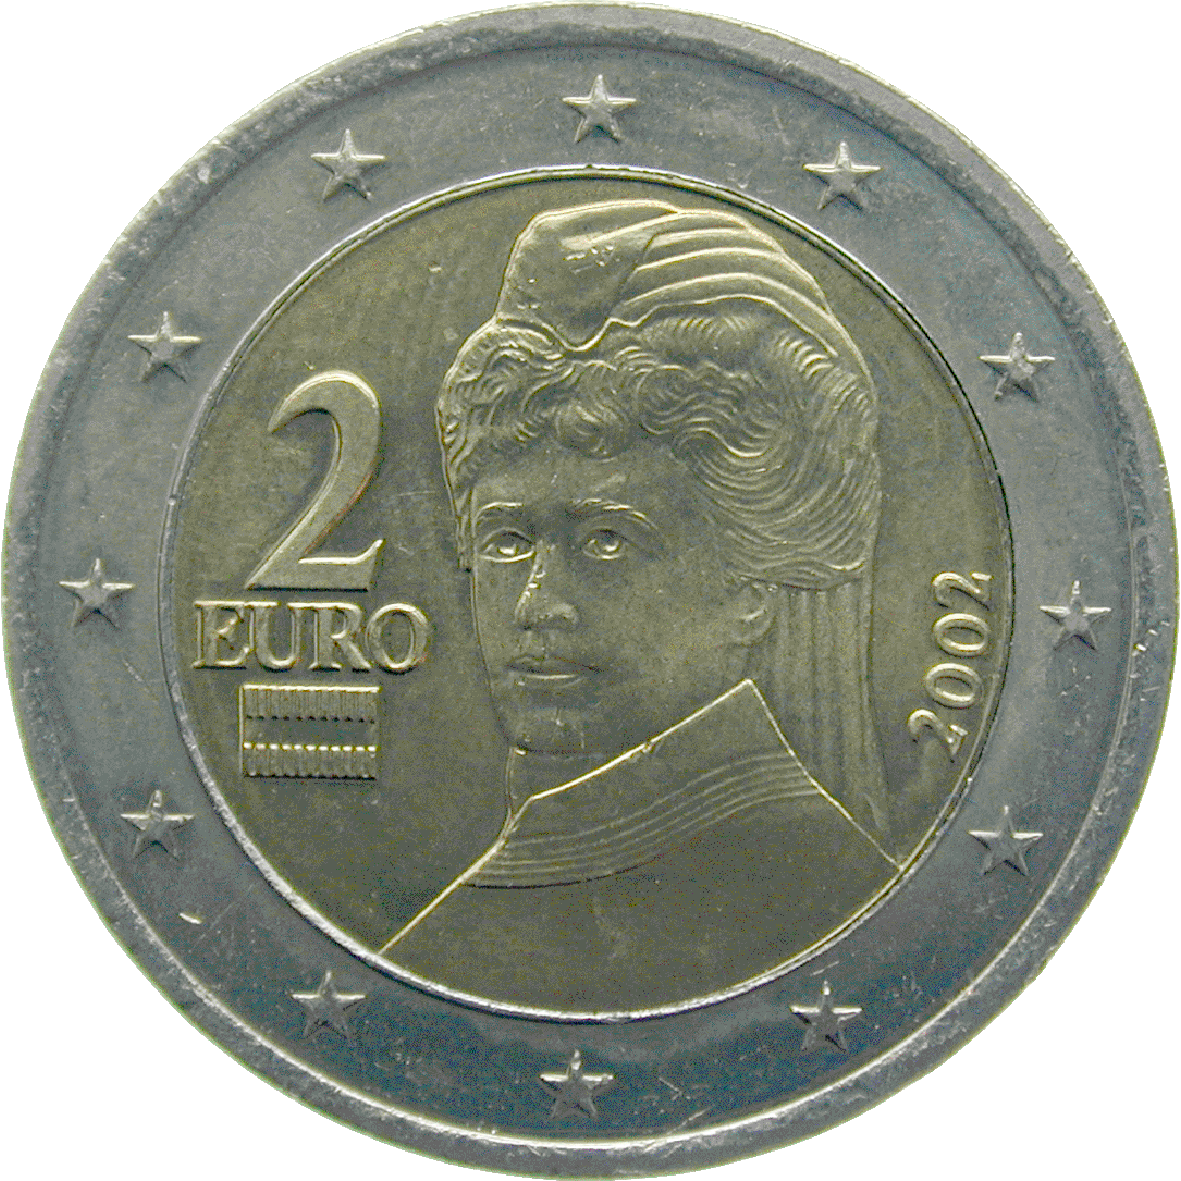 Republik Österreich, 2 Euro 2002 (reverse)